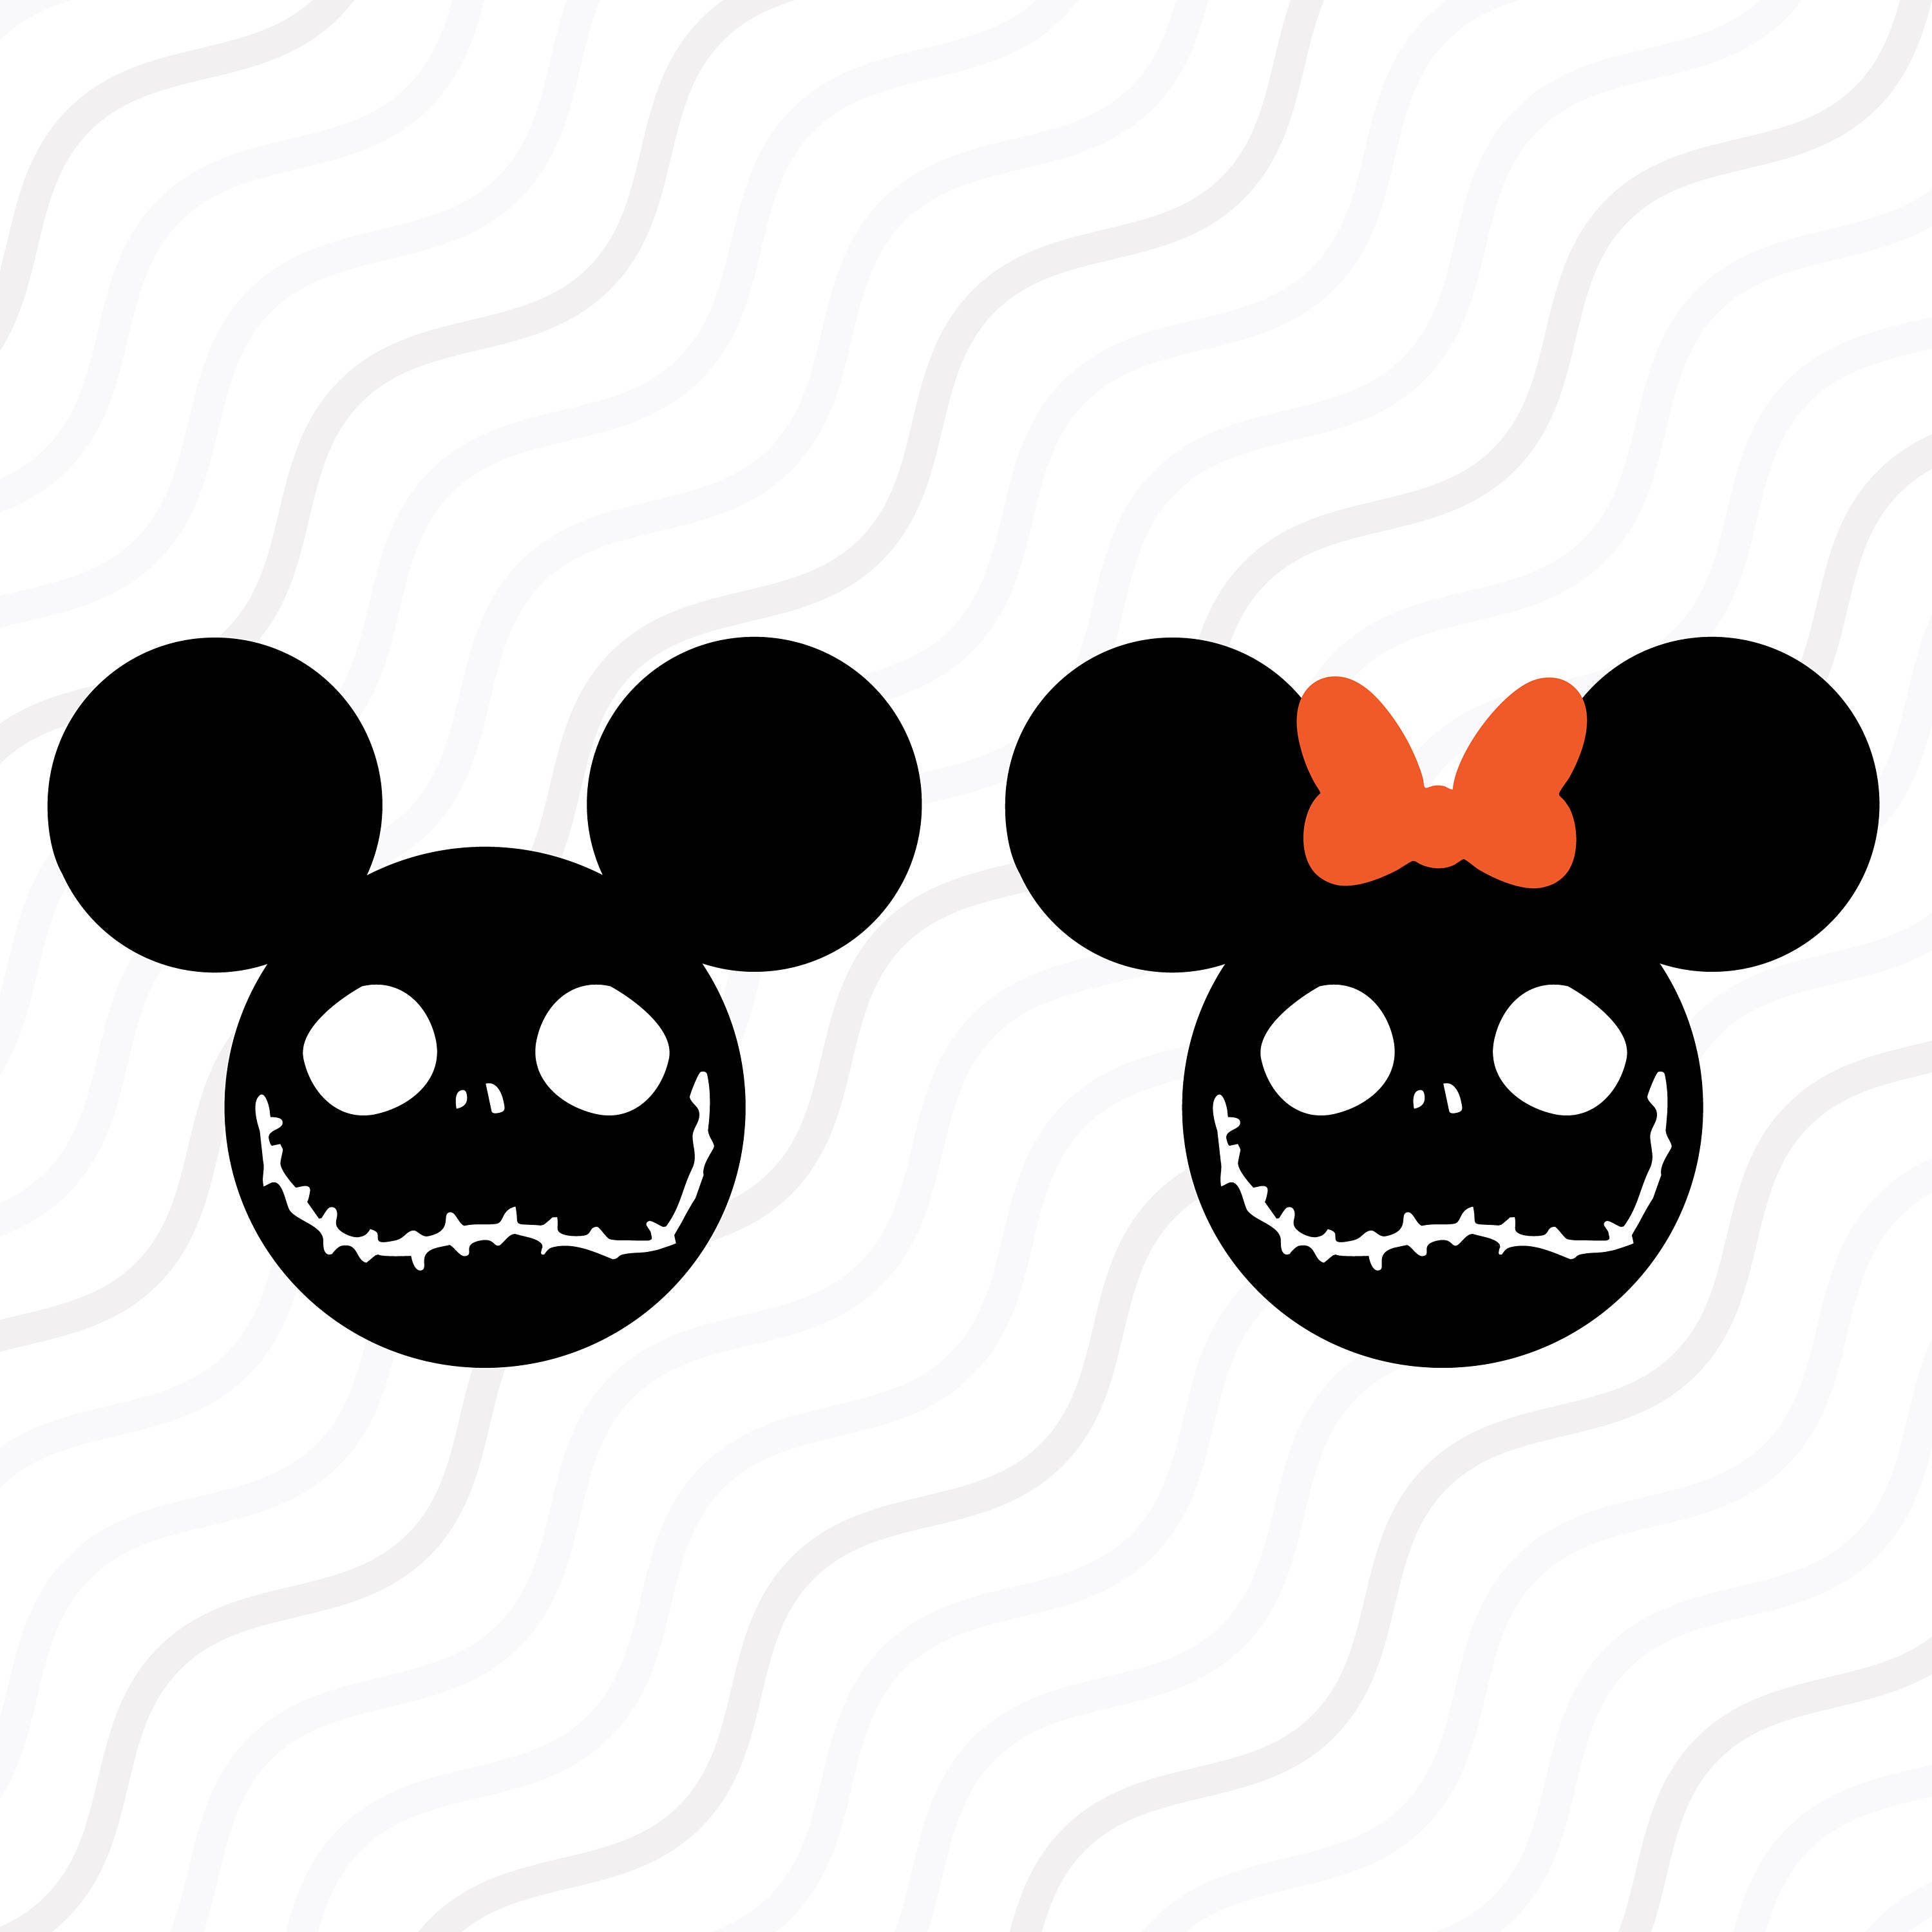 Disney Halloween Svg Images - 85+ Popular SVG File